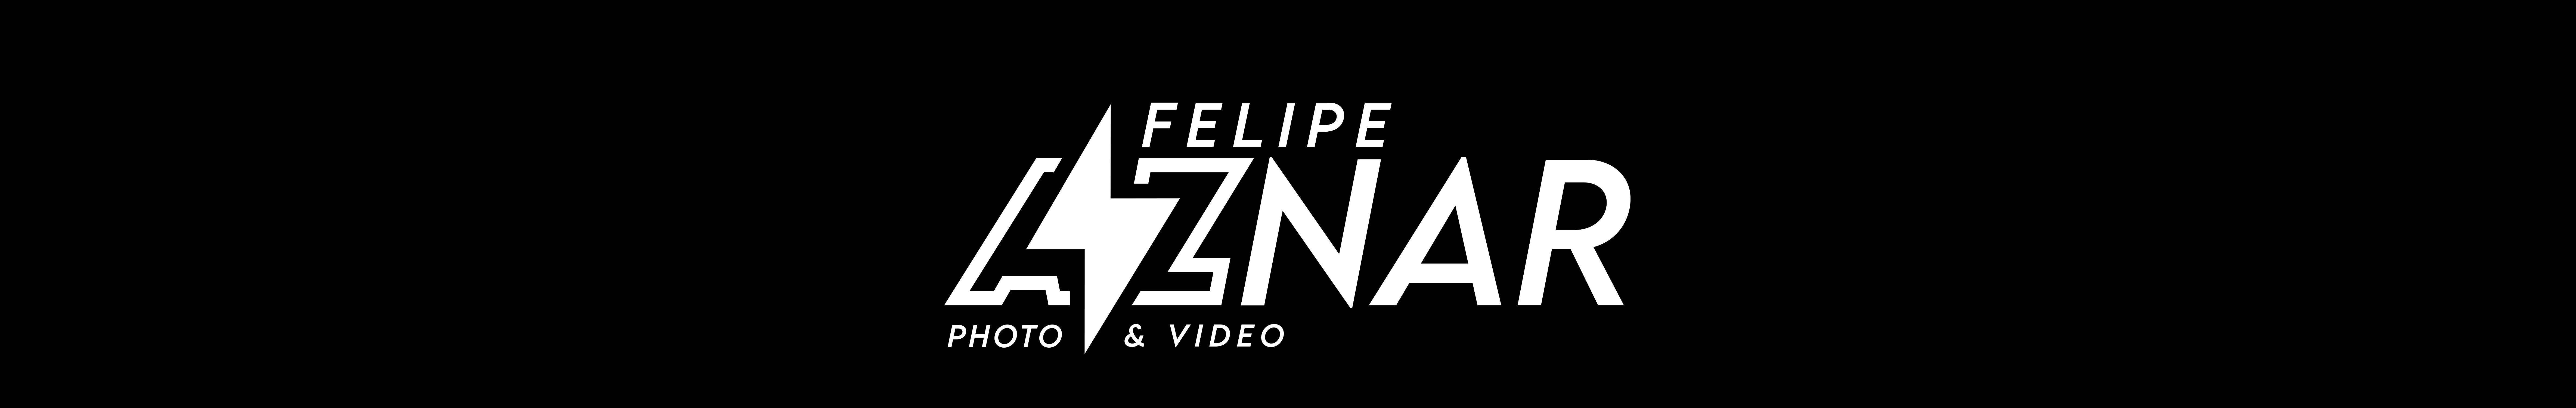 Felipe Aznar profil başlığı